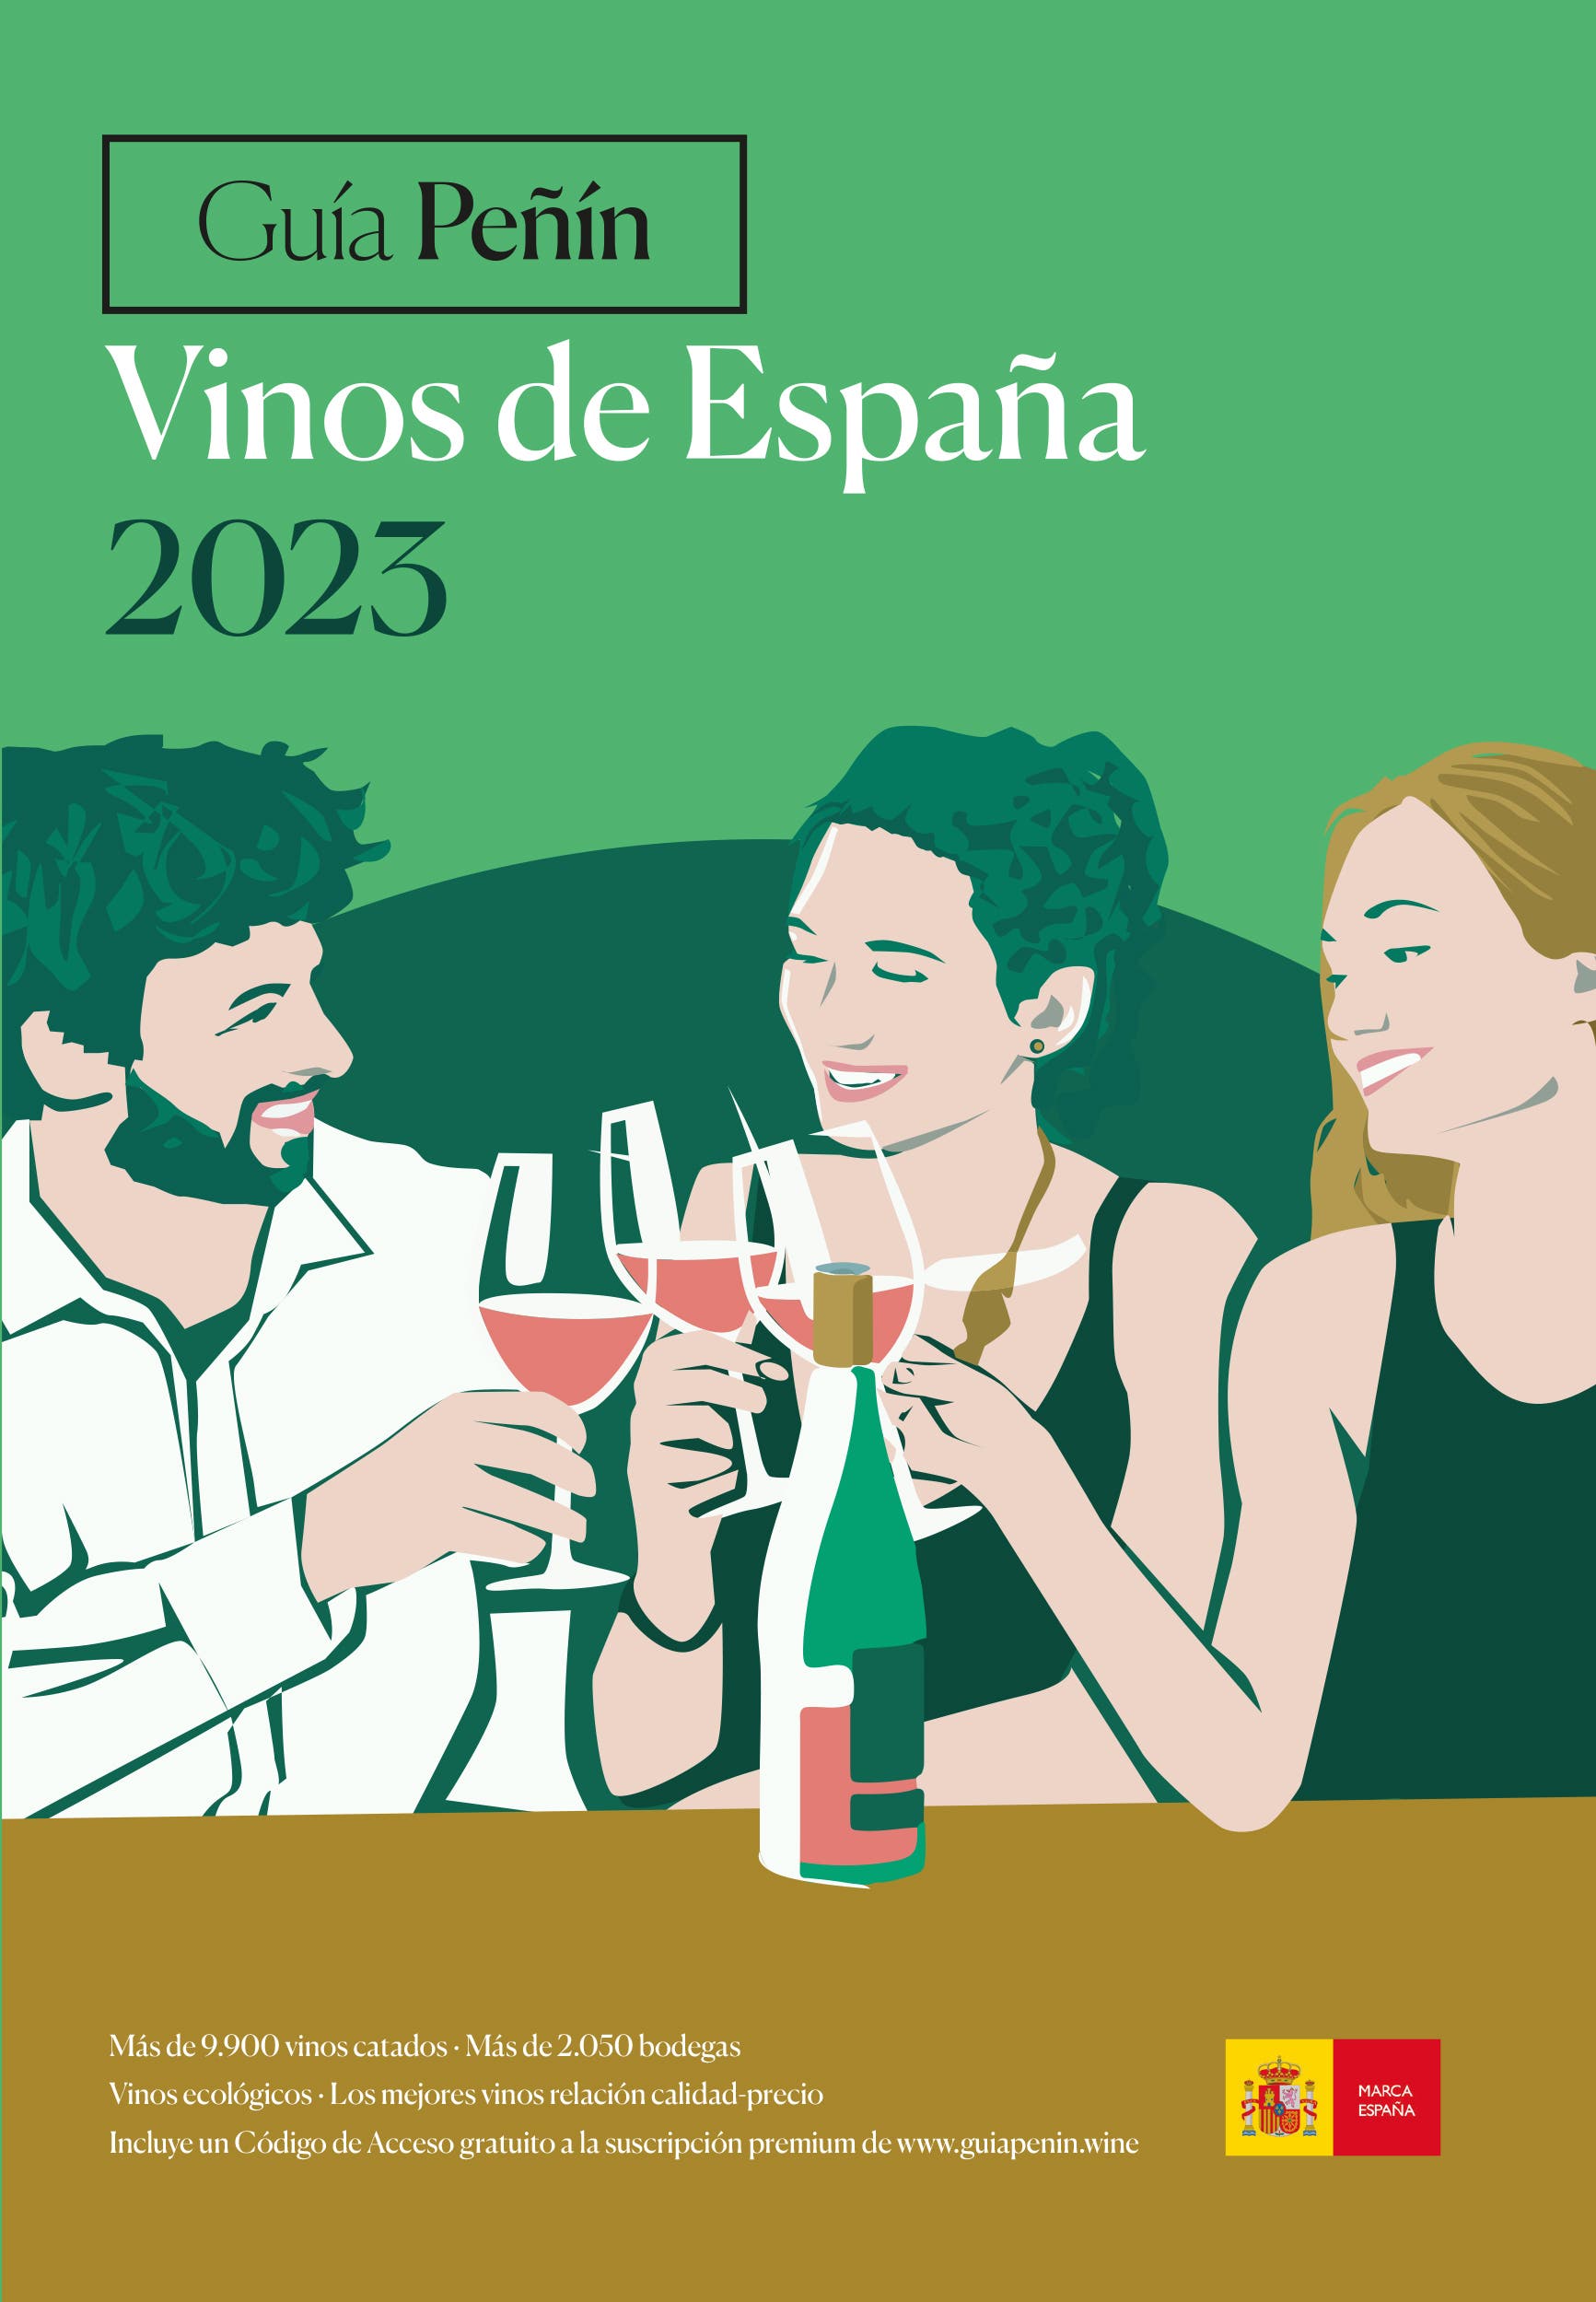 inos de Espana

 

Mis de 9.900 vinos catados - Mas de 2.050 bodegas

Vinos ecoldgicos - Los mejores vinos relacion calidad-precio MARCA

ESPANA

 

Incluye un Codigo de Acceso gratuito a la suscripcion premium de www.guiapenin.wine